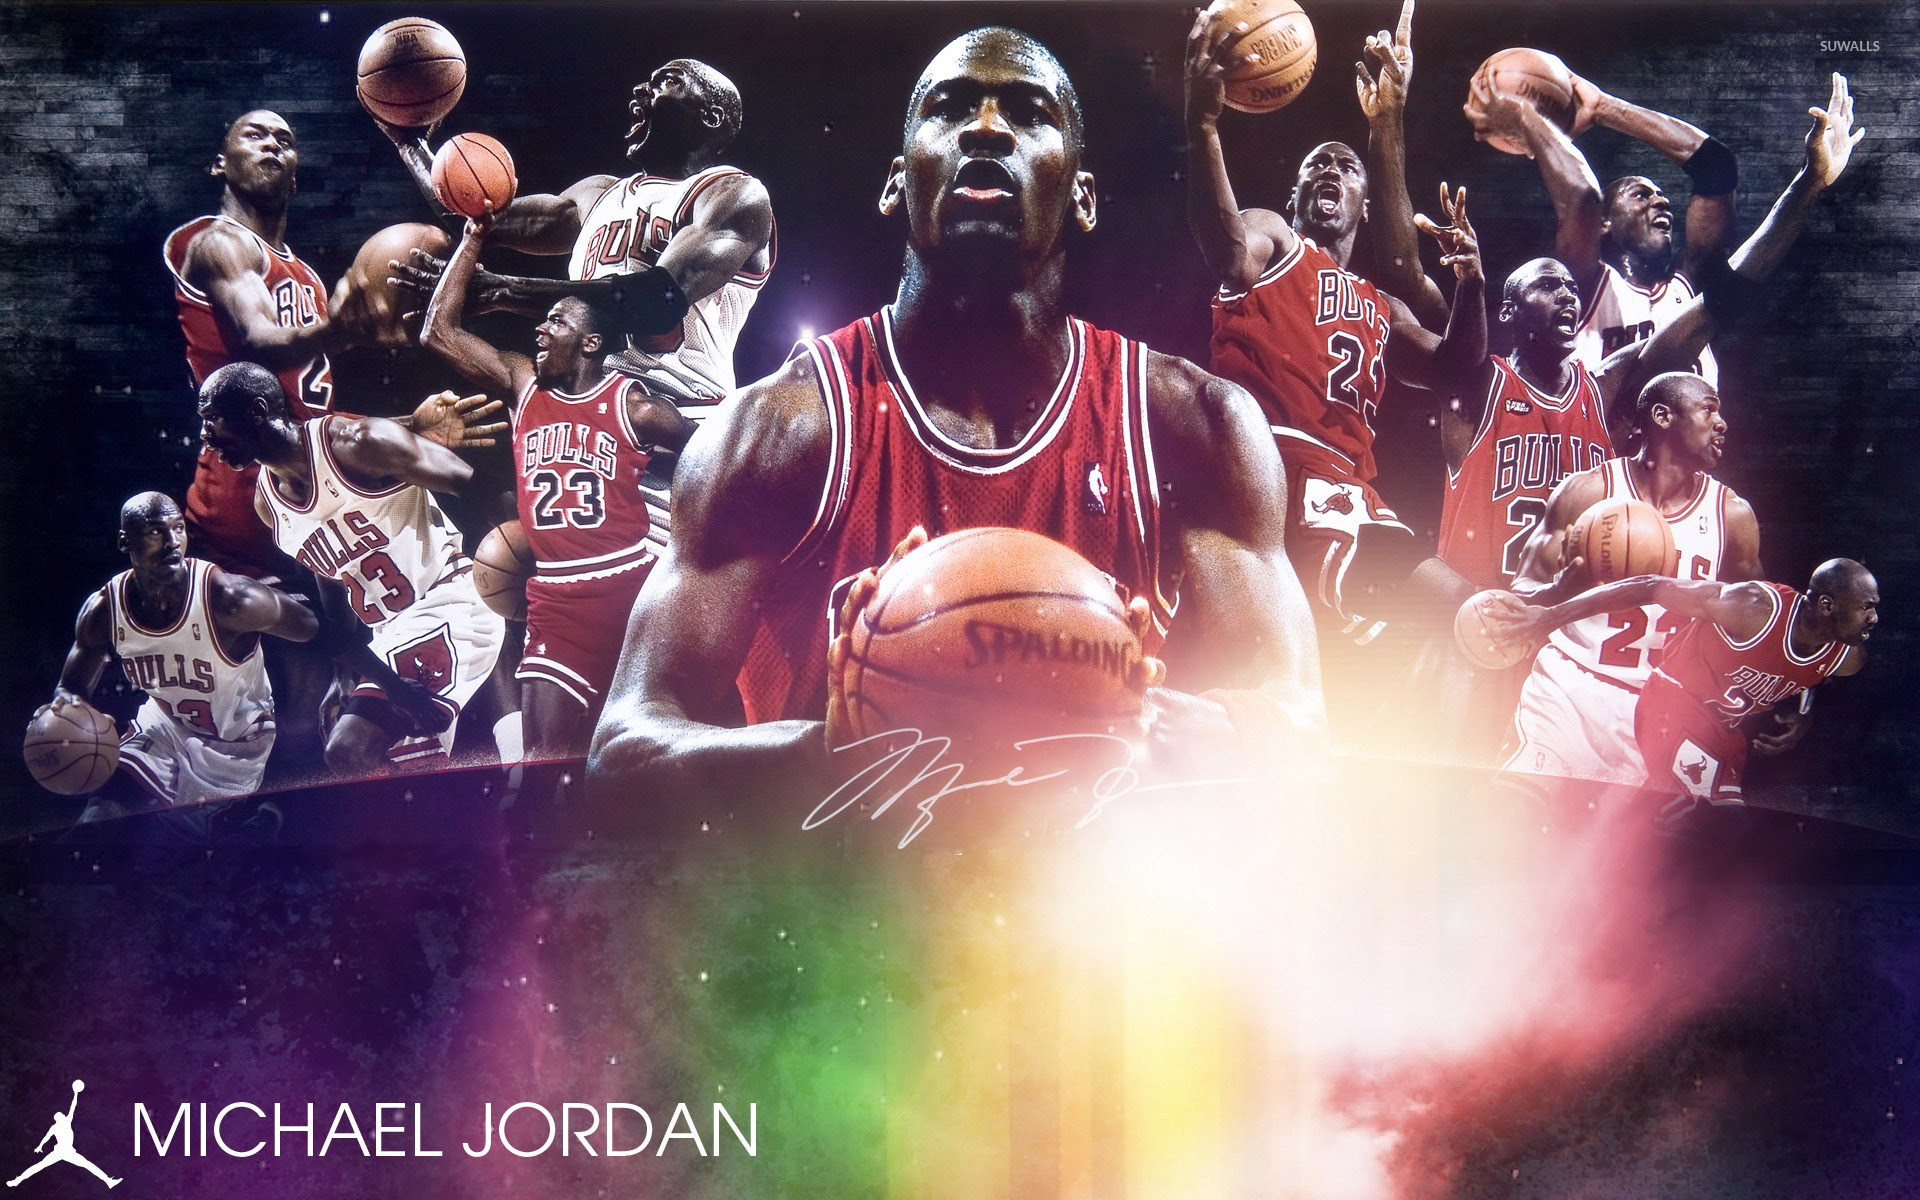 Michael Jordan wallpapers. 